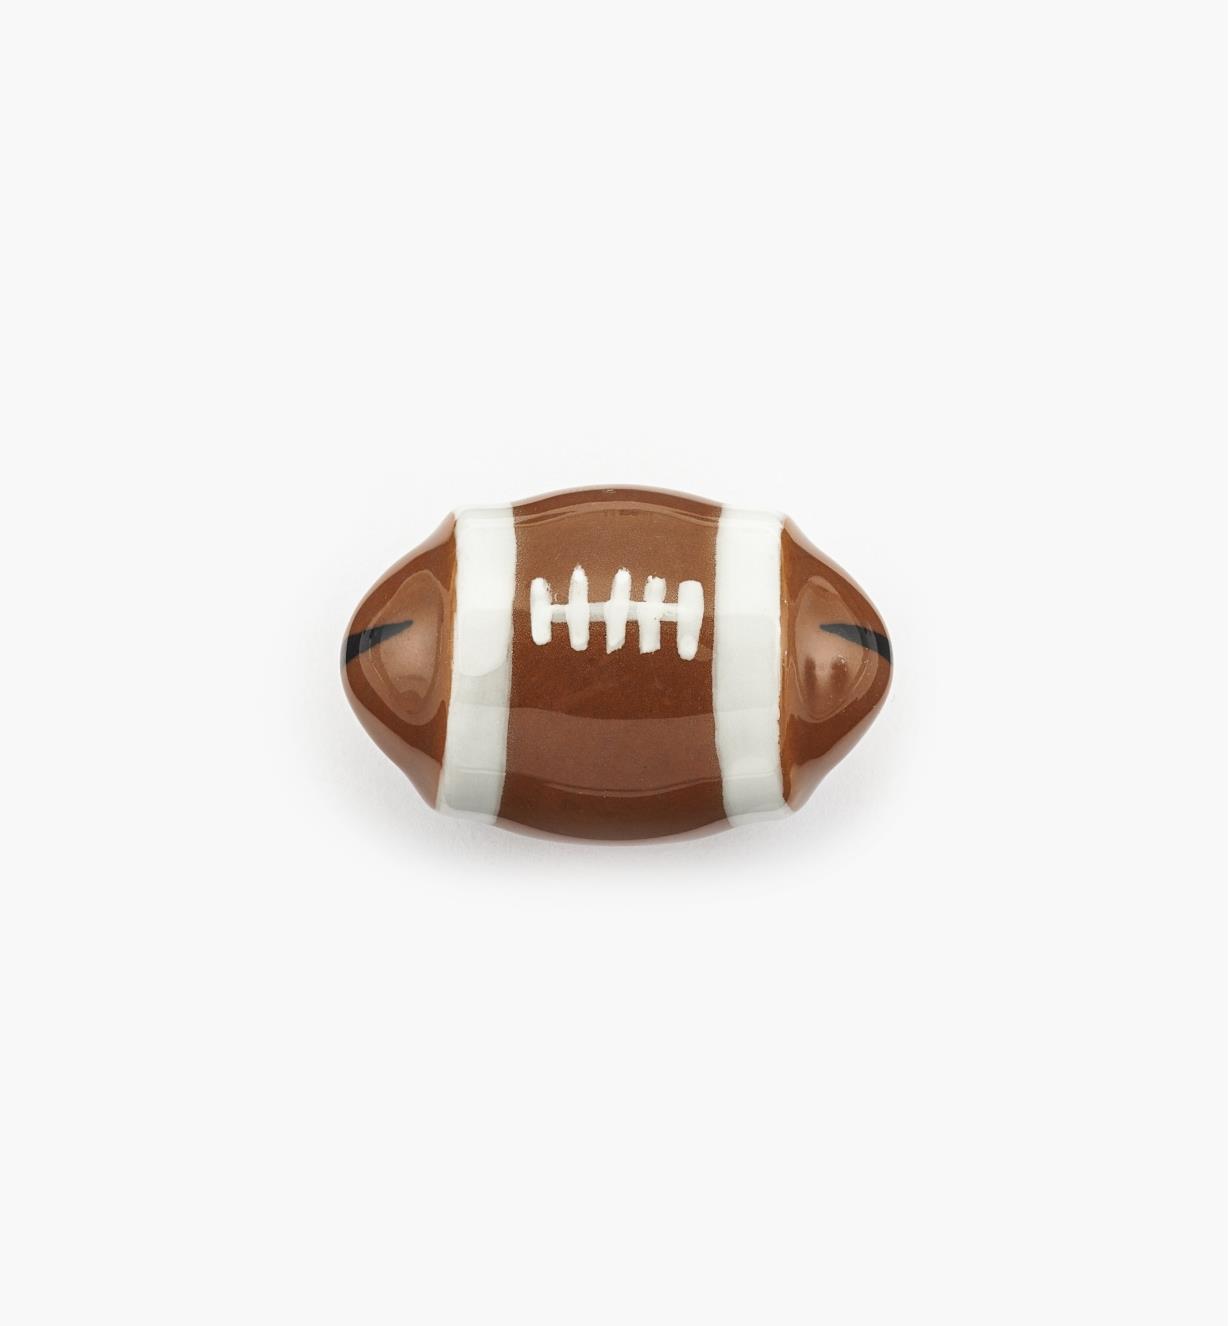 00W5324 - Bouton ballon de football, 1 3/4 po x 1 1/8 po, l'unité